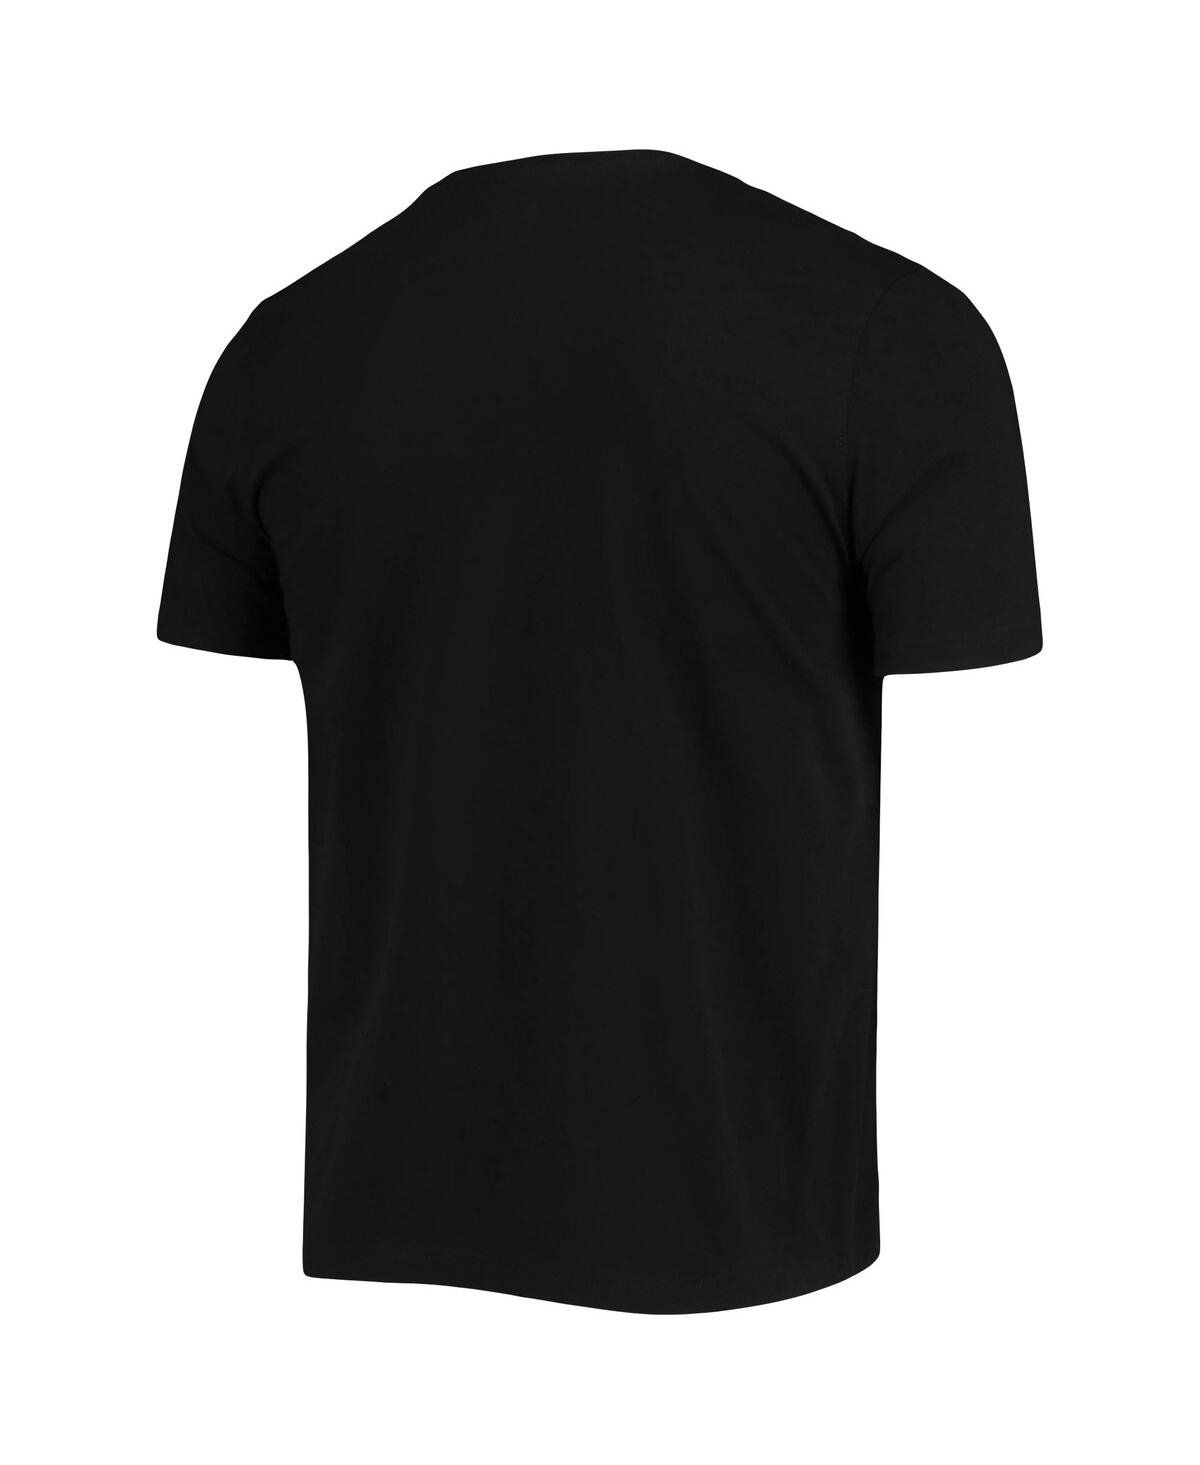 Shop New Era Men's  Black Arizona Cardinals Local Pack T-shirt